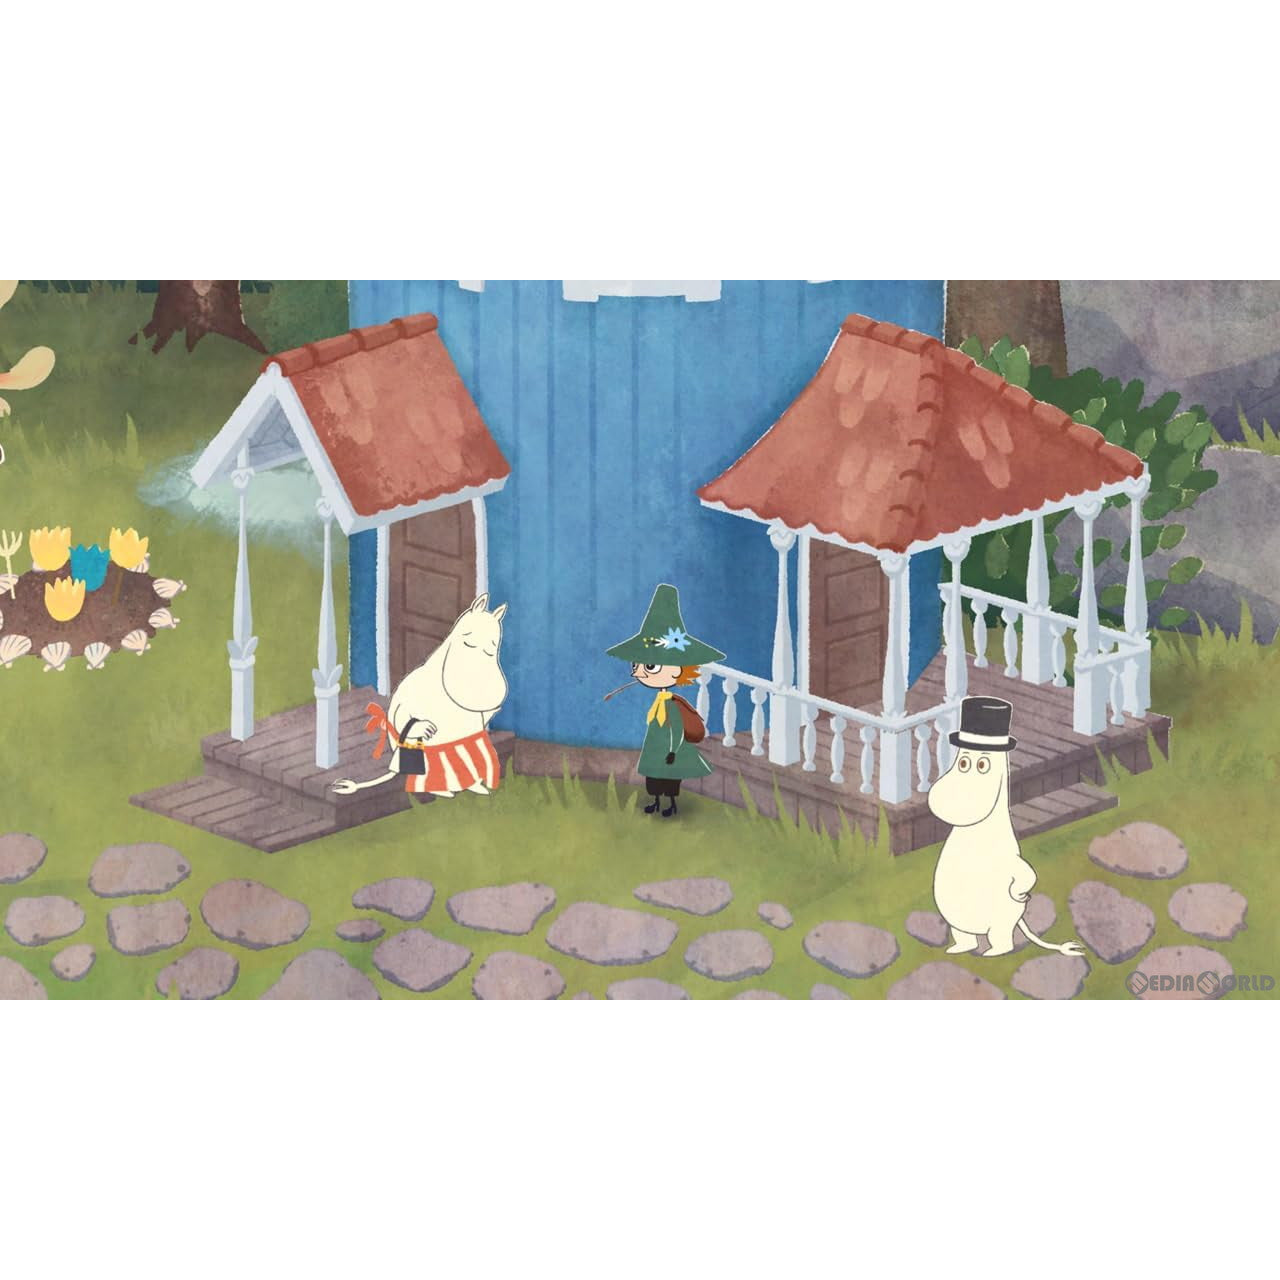 【予約前日出荷】[Switch]スナフキン:ムーミン谷のメロディ(Snufkin: Melody of Moominvalley) 限定版(20240613)